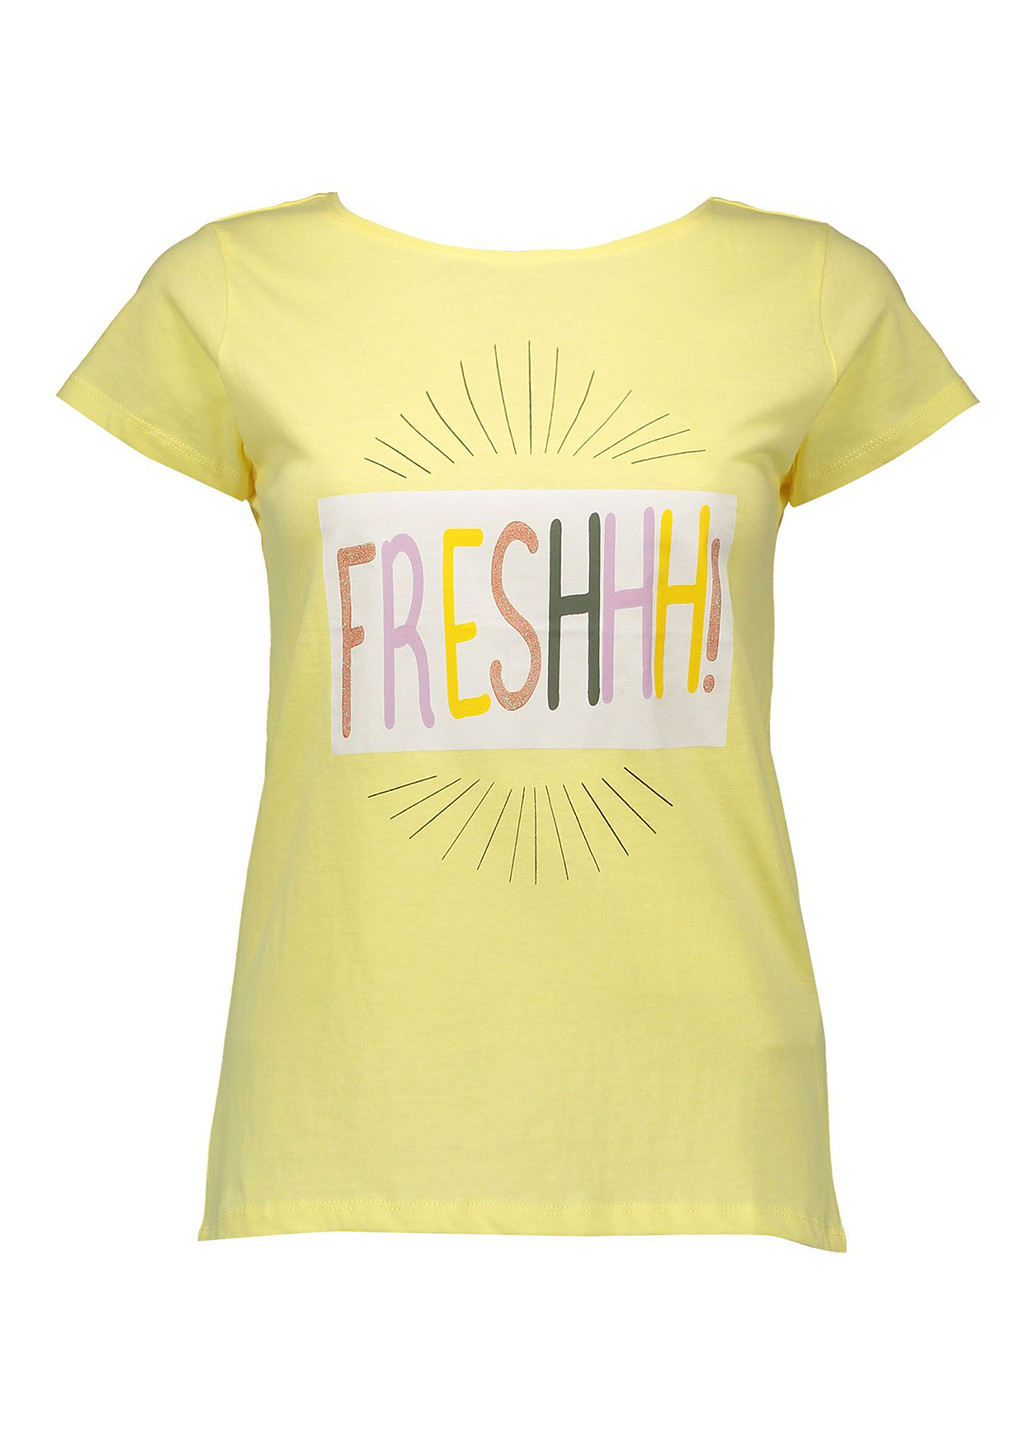 Жовта літня футболка з коротким рукавом Piazza Italia